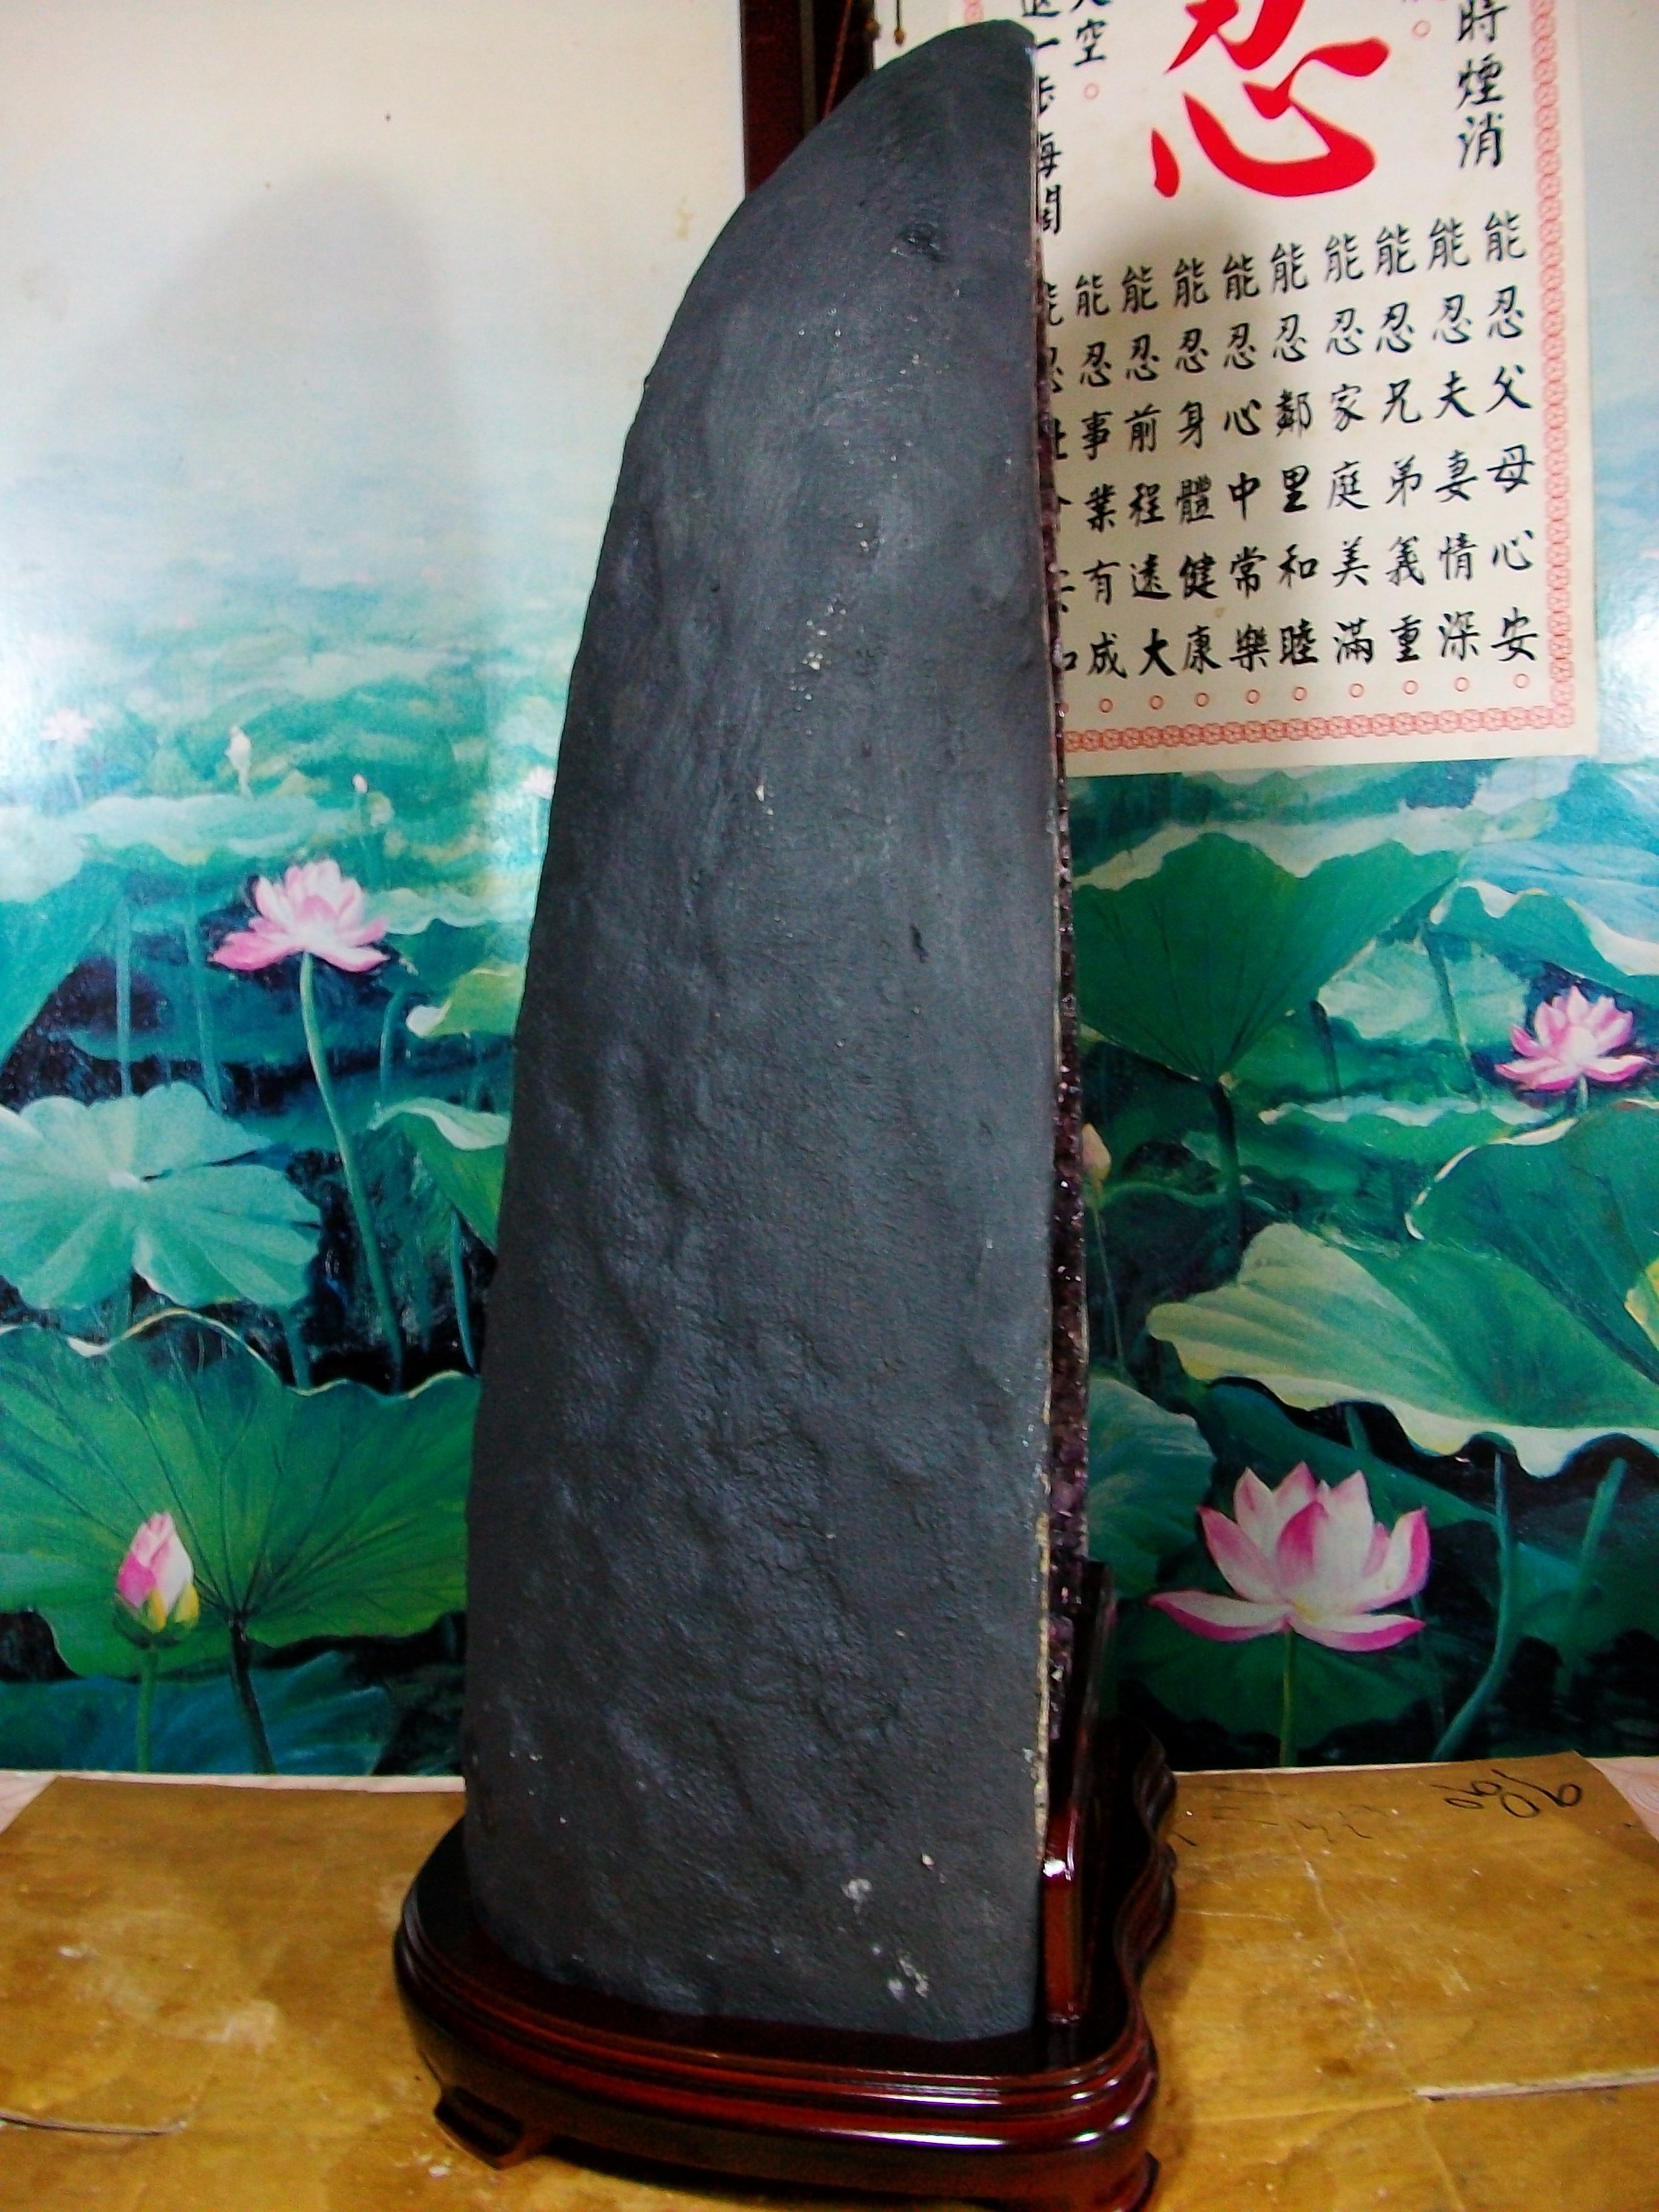 月理水晶鹽燈~ 頂級天然  21.1公斤 ((巴西紫水晶洞))   藏風 納氣